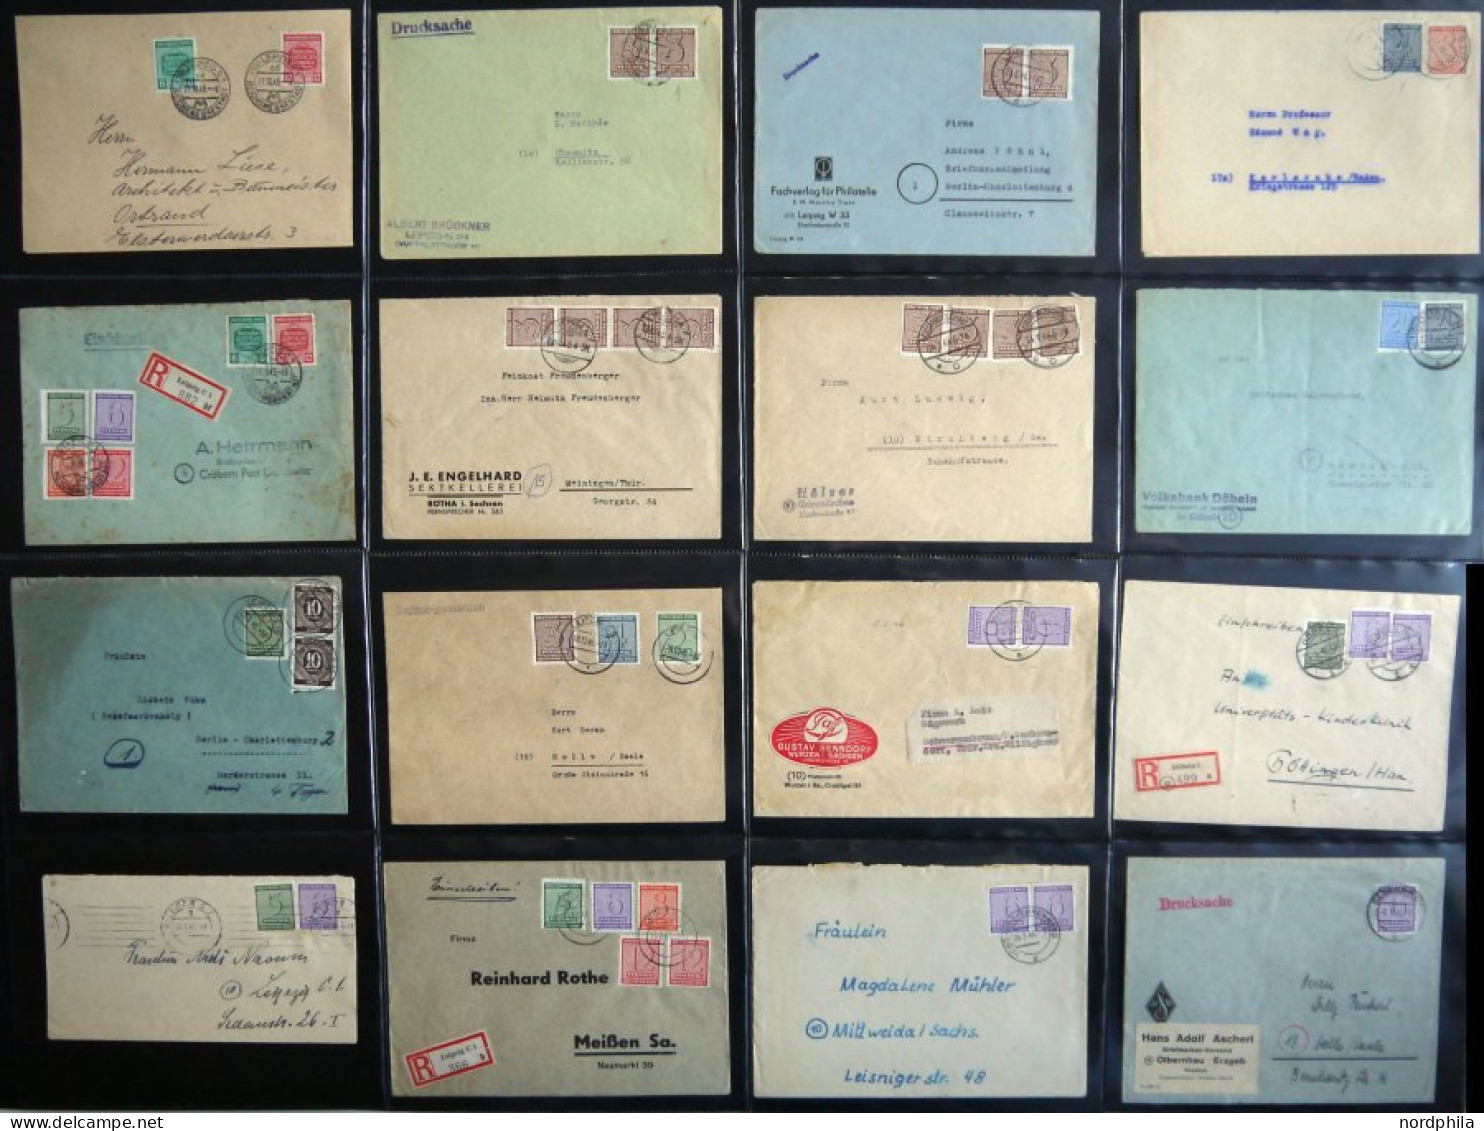 WEST-SACHSEN interessante Briefsammlung von 135 verschiedenen Belegen, dabei gute mittlere Frankaturen, bessere Abstempe